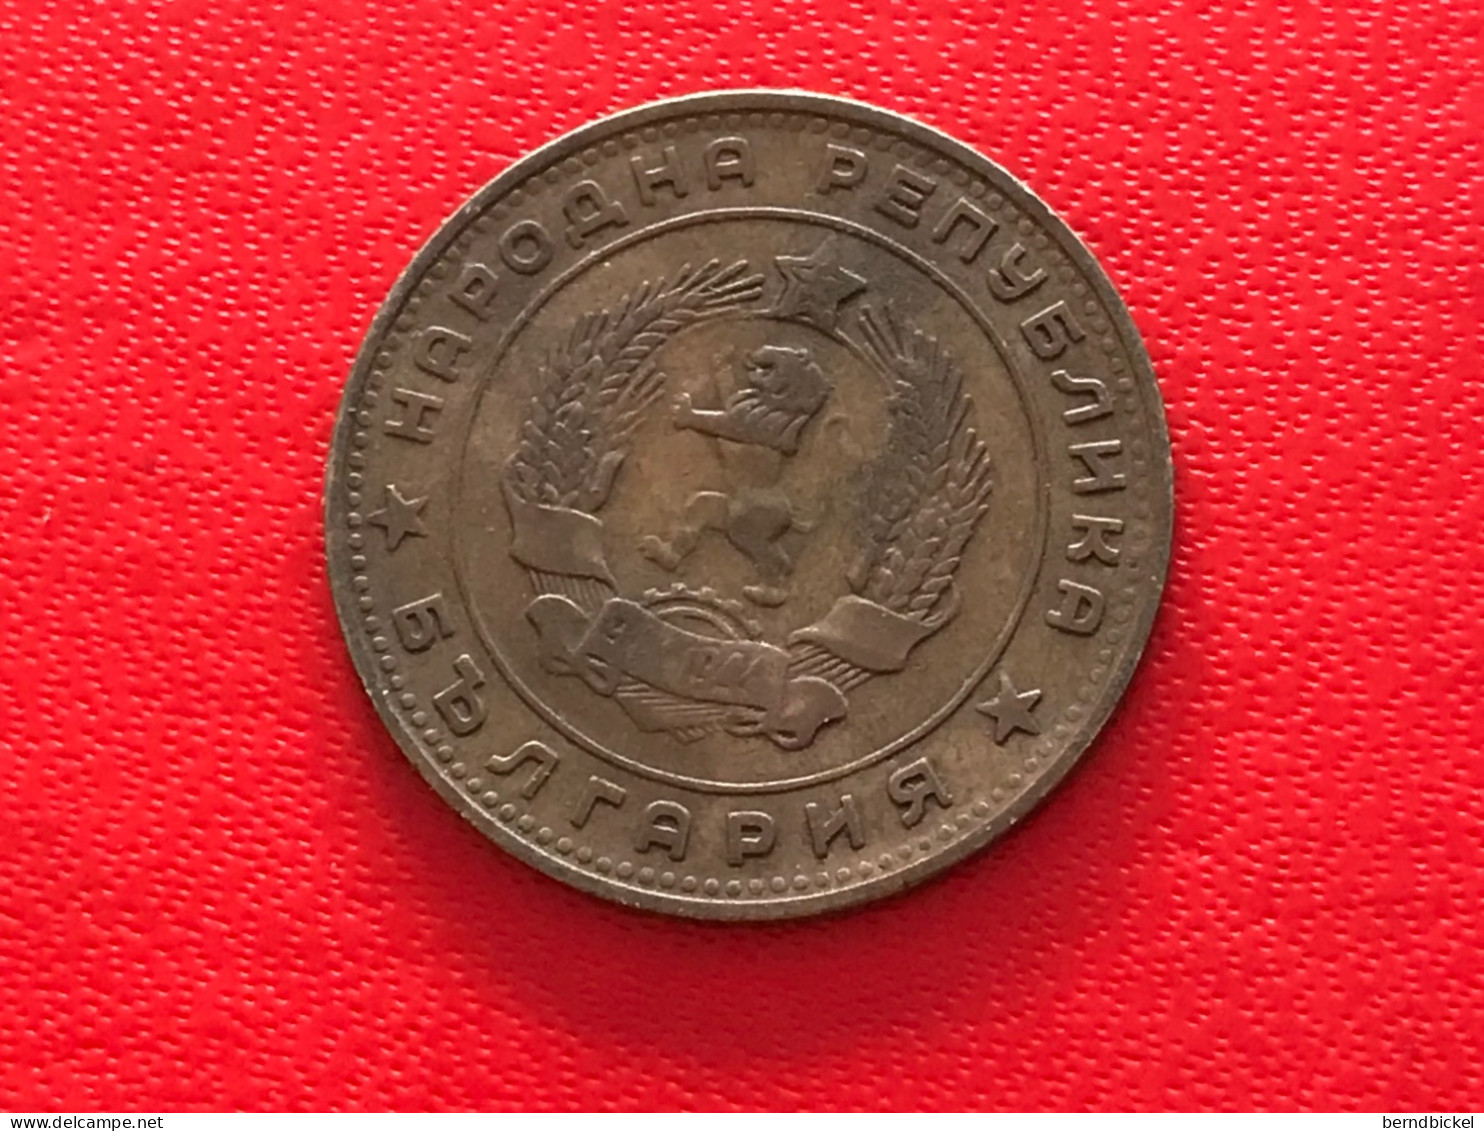 Münze Münzen Umlaufmünze Bulgarien 5 Stotinki 1962 - Bulgarien